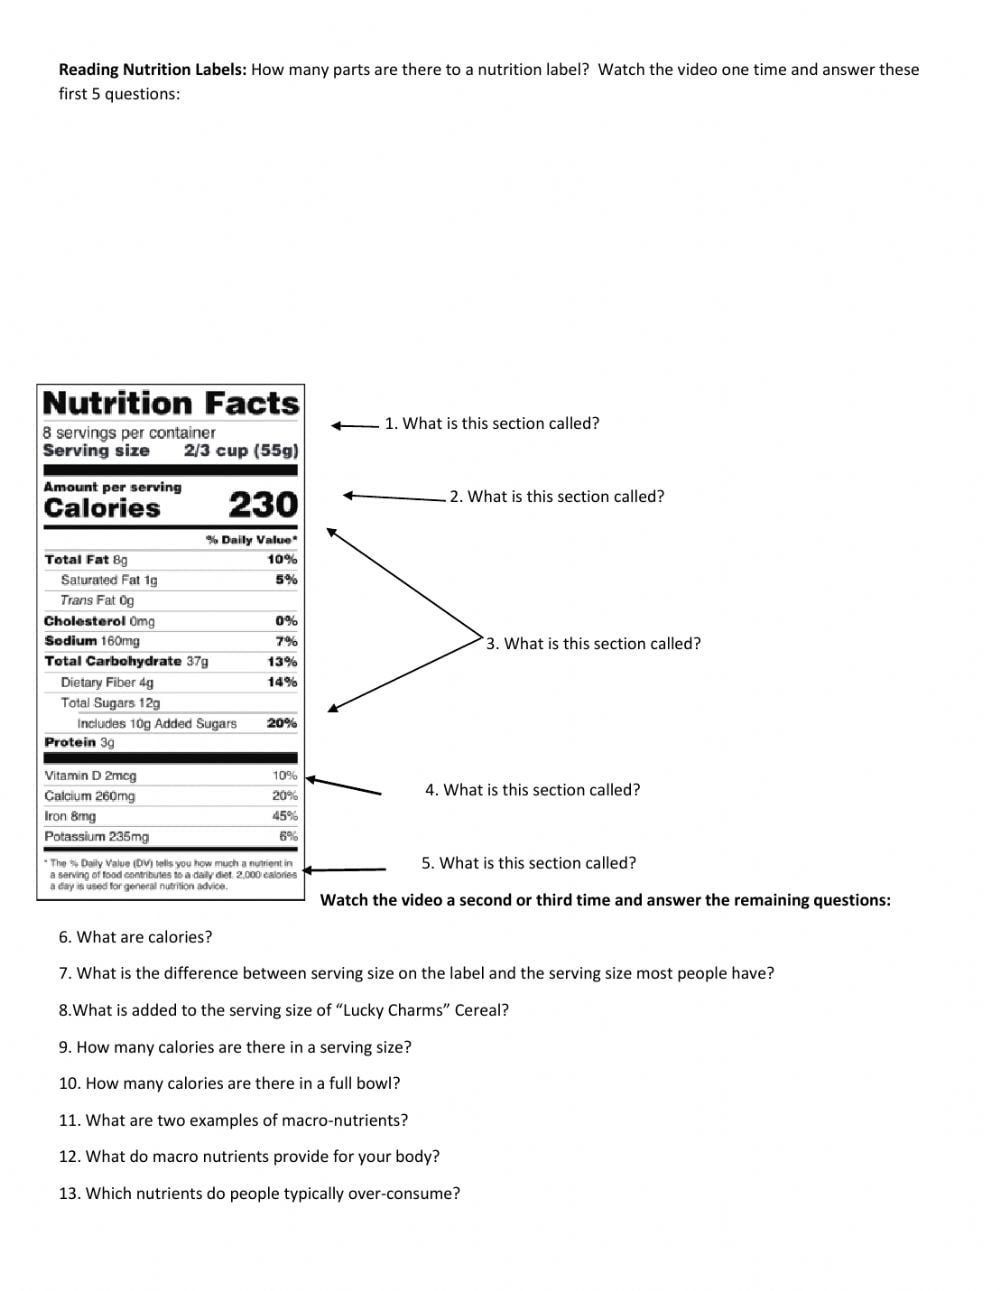 Reading Nutrition Labels Worksheet